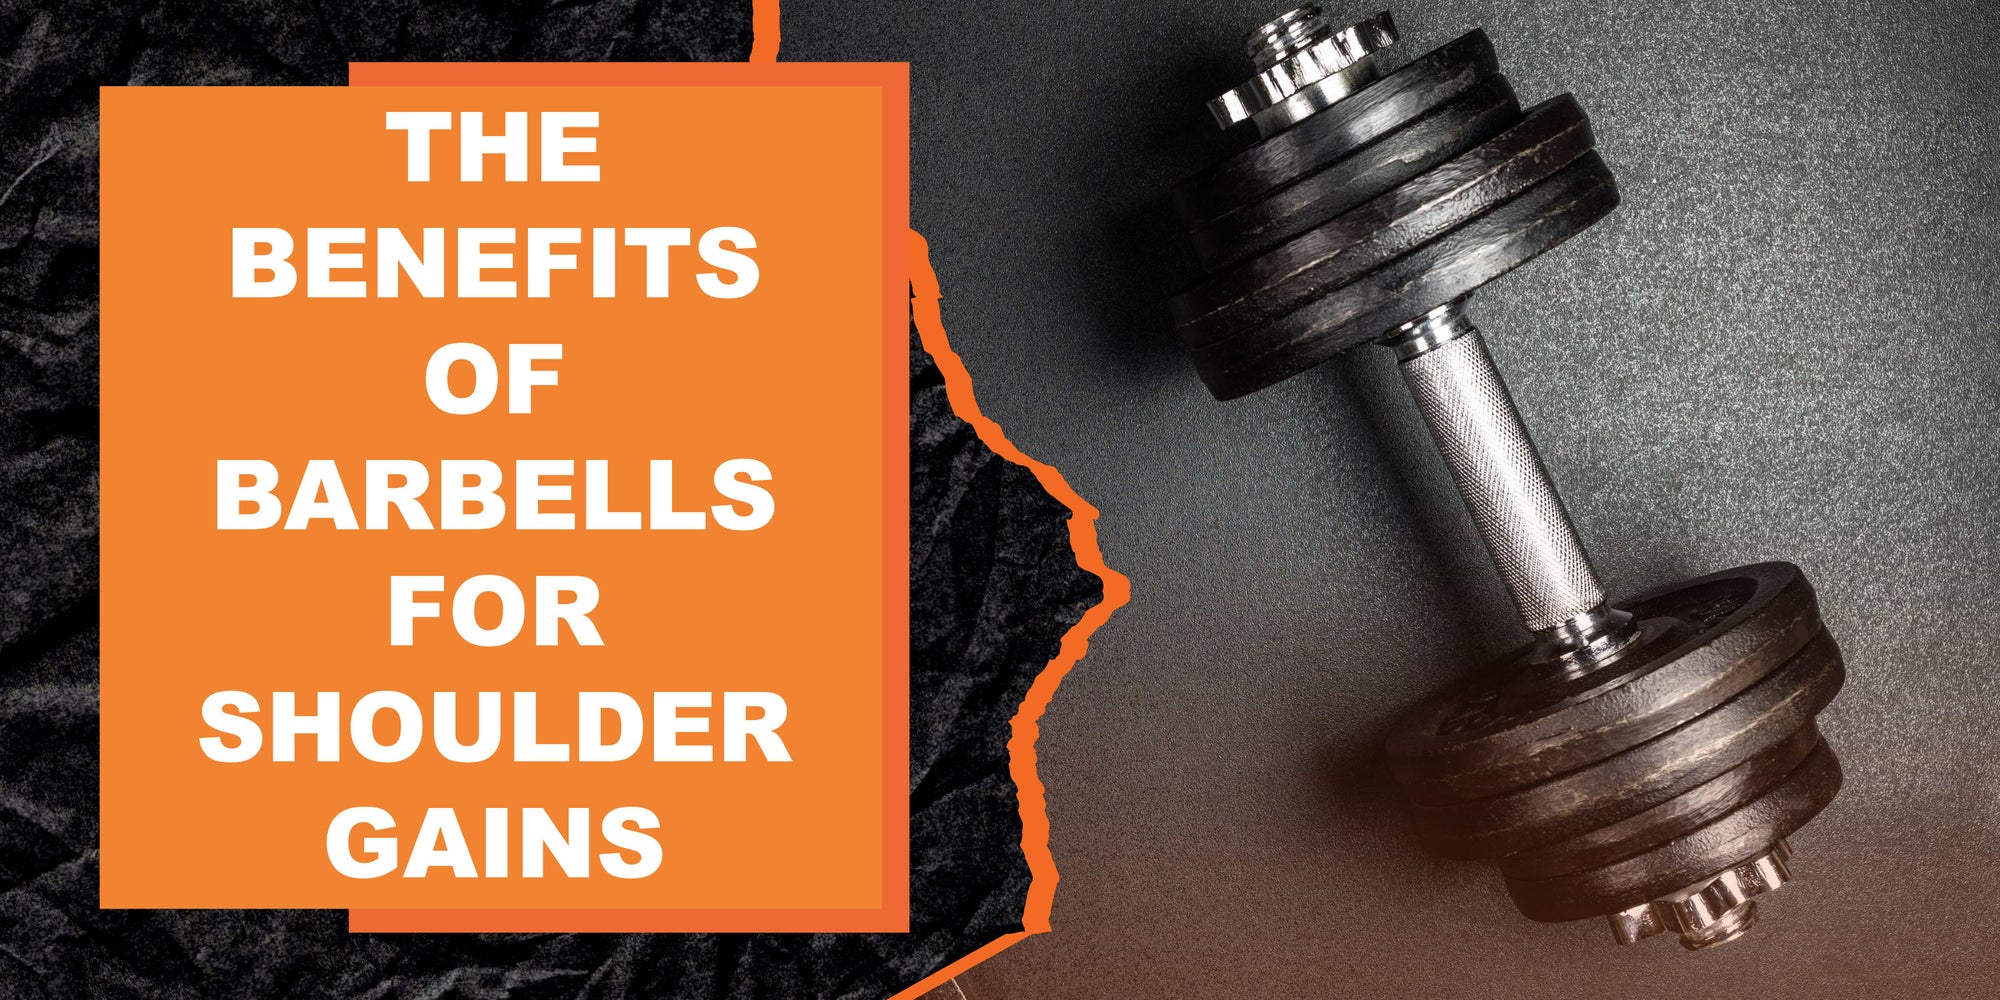 The Benefits of Barbells for Shoulder Gains